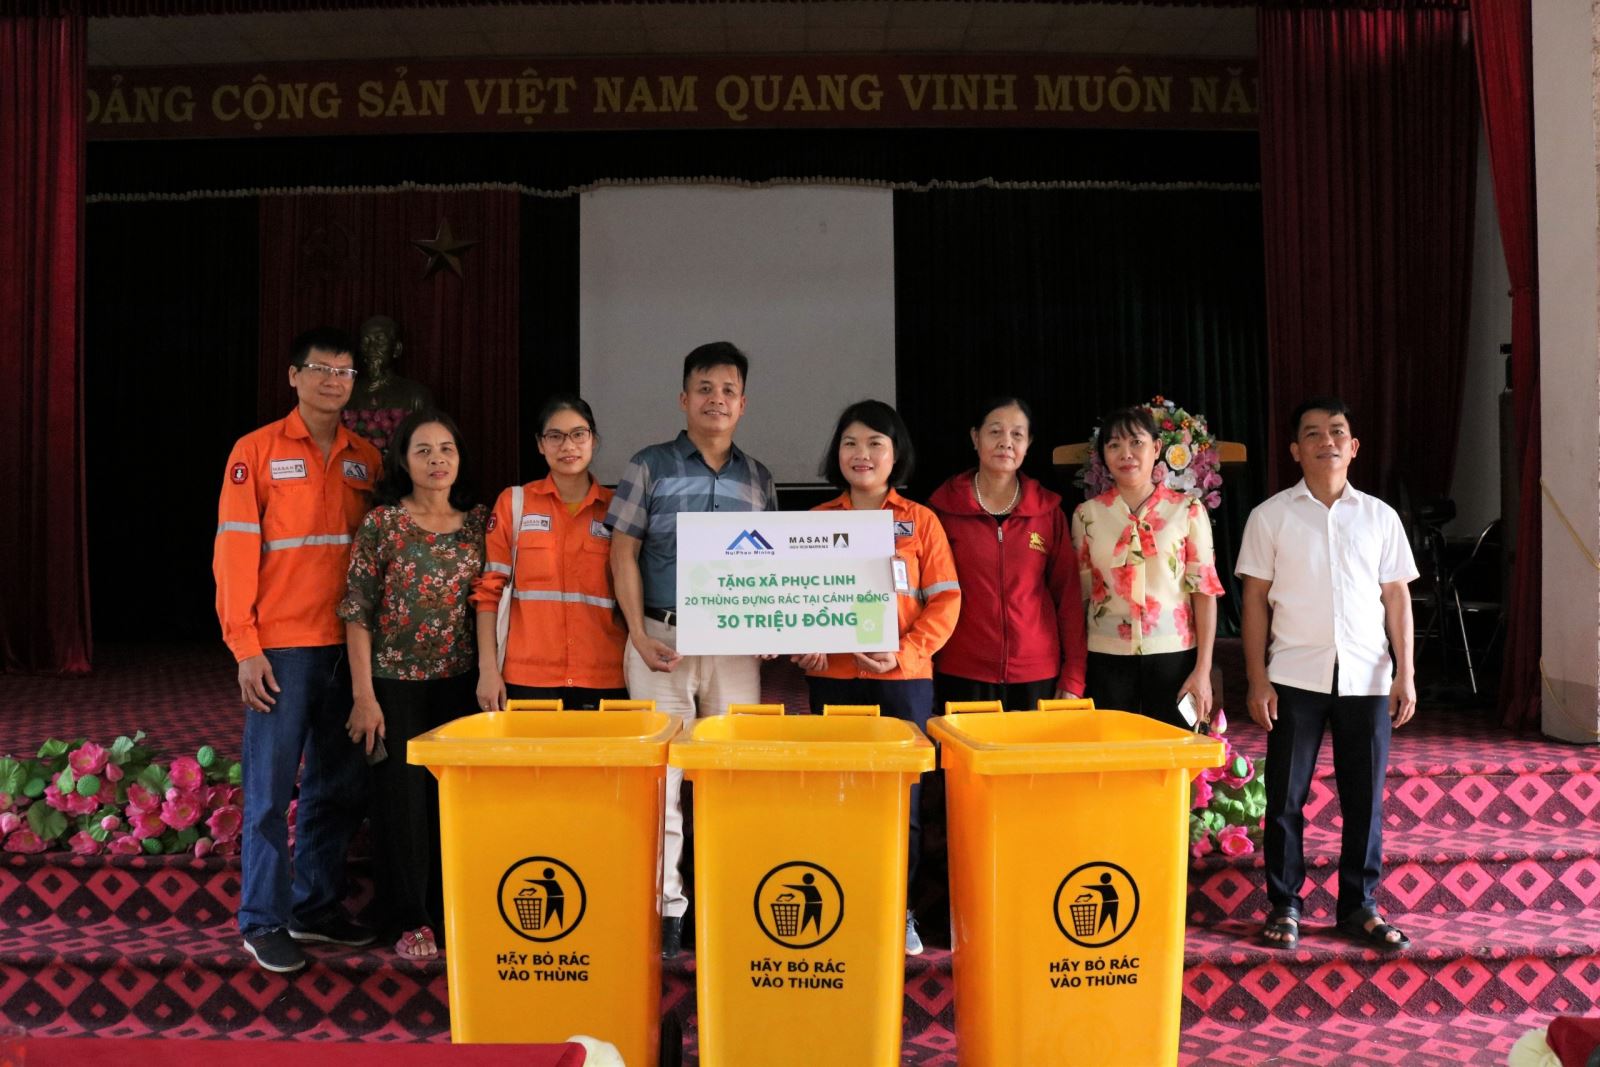 “Chung tay hành động cho thế giới sạch hơn” Công ty Núi Pháo chung tay cùng địa phương bảo vệ môi trường